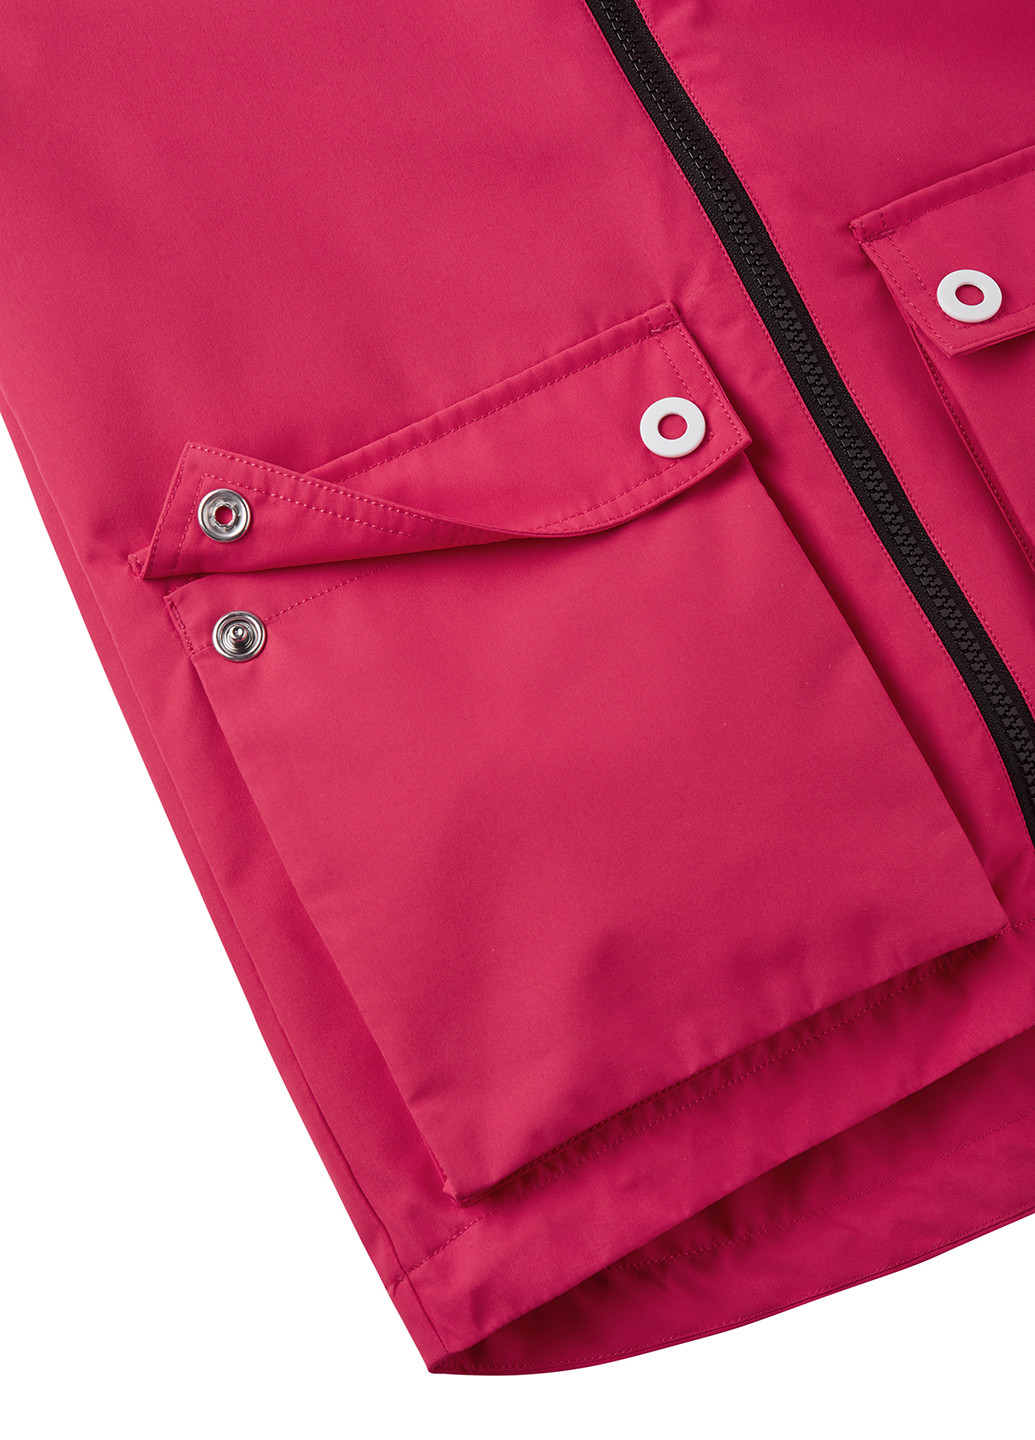 Розовая зимняя куртка 3в1 Reima Syddi